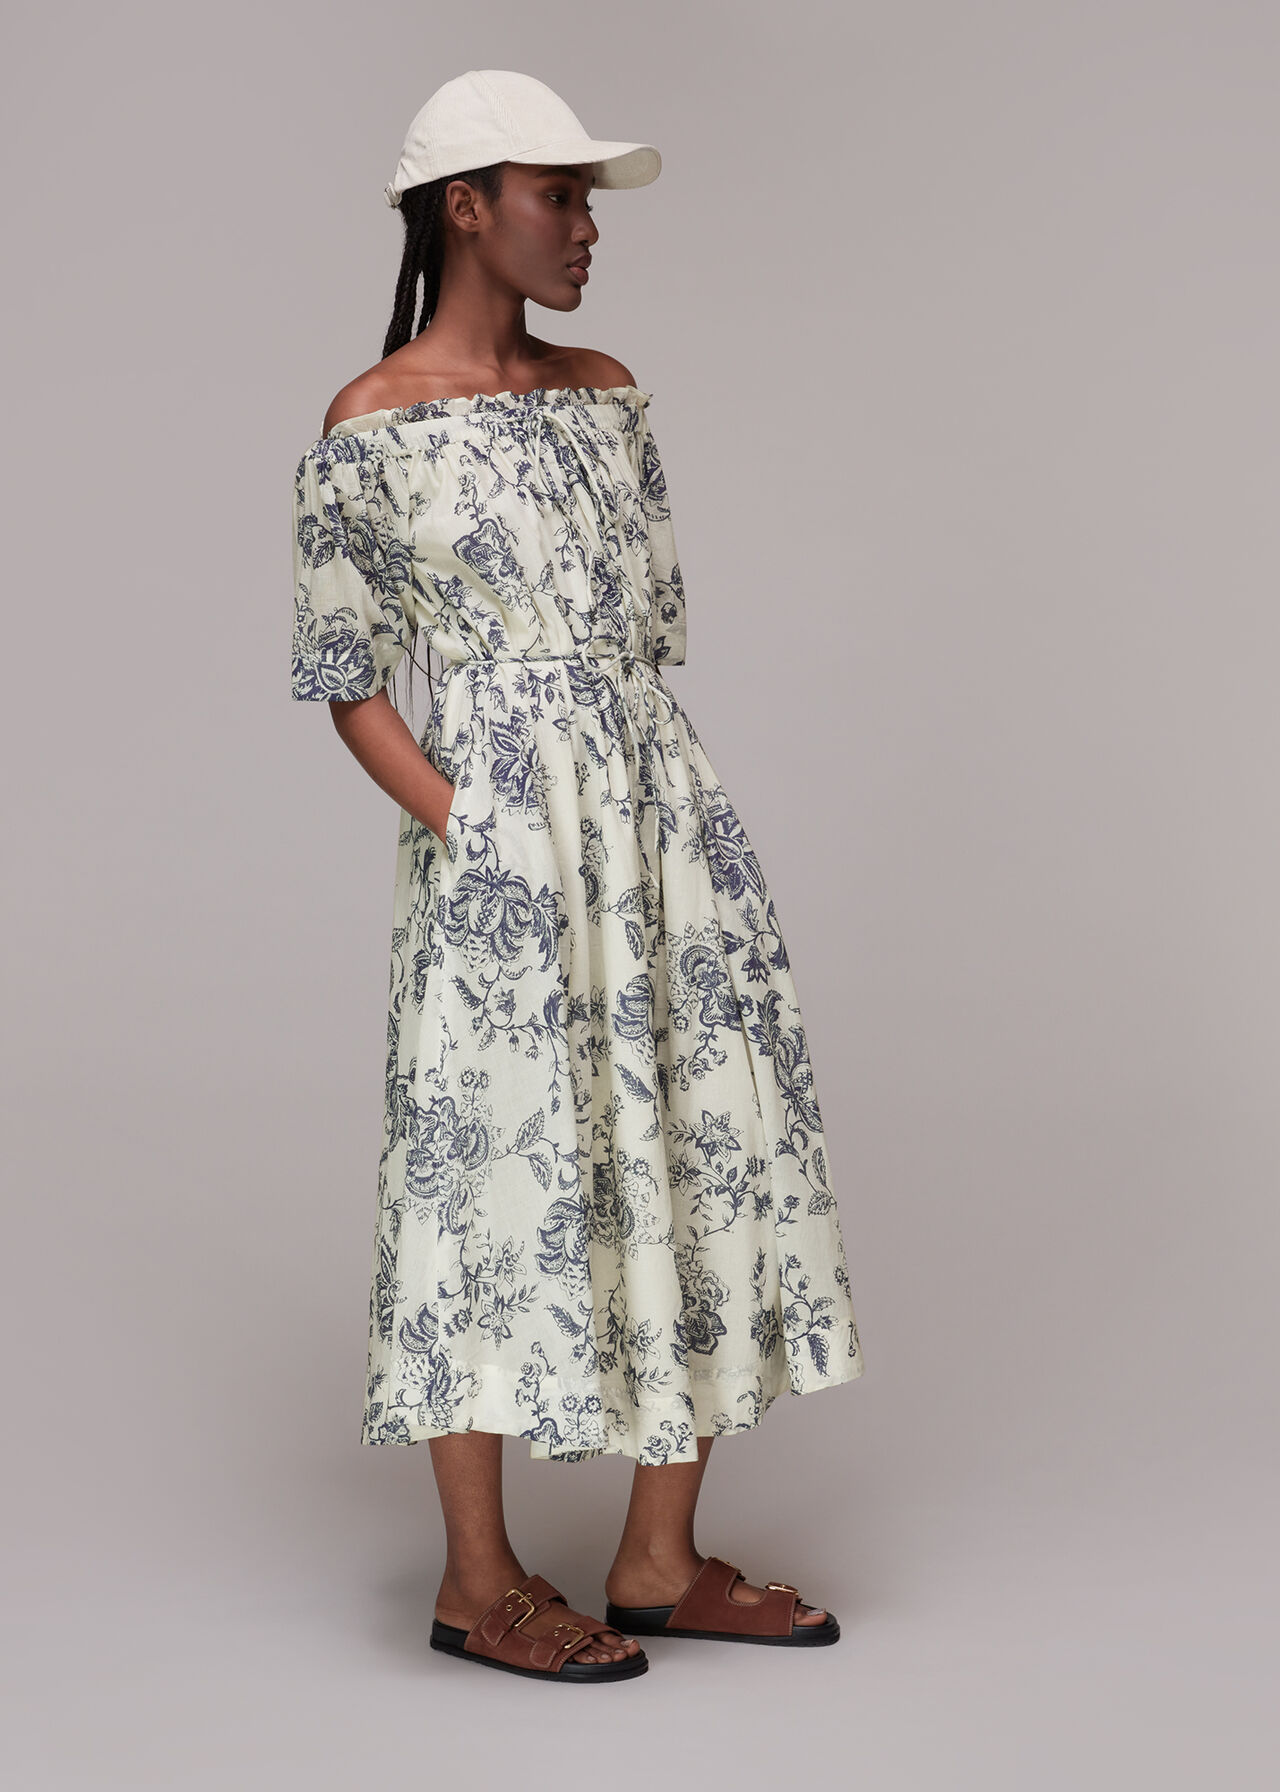 Short Floral Cotton Dress  Floral cotton dress, Summer fashion dresses,  Contemporary outfits